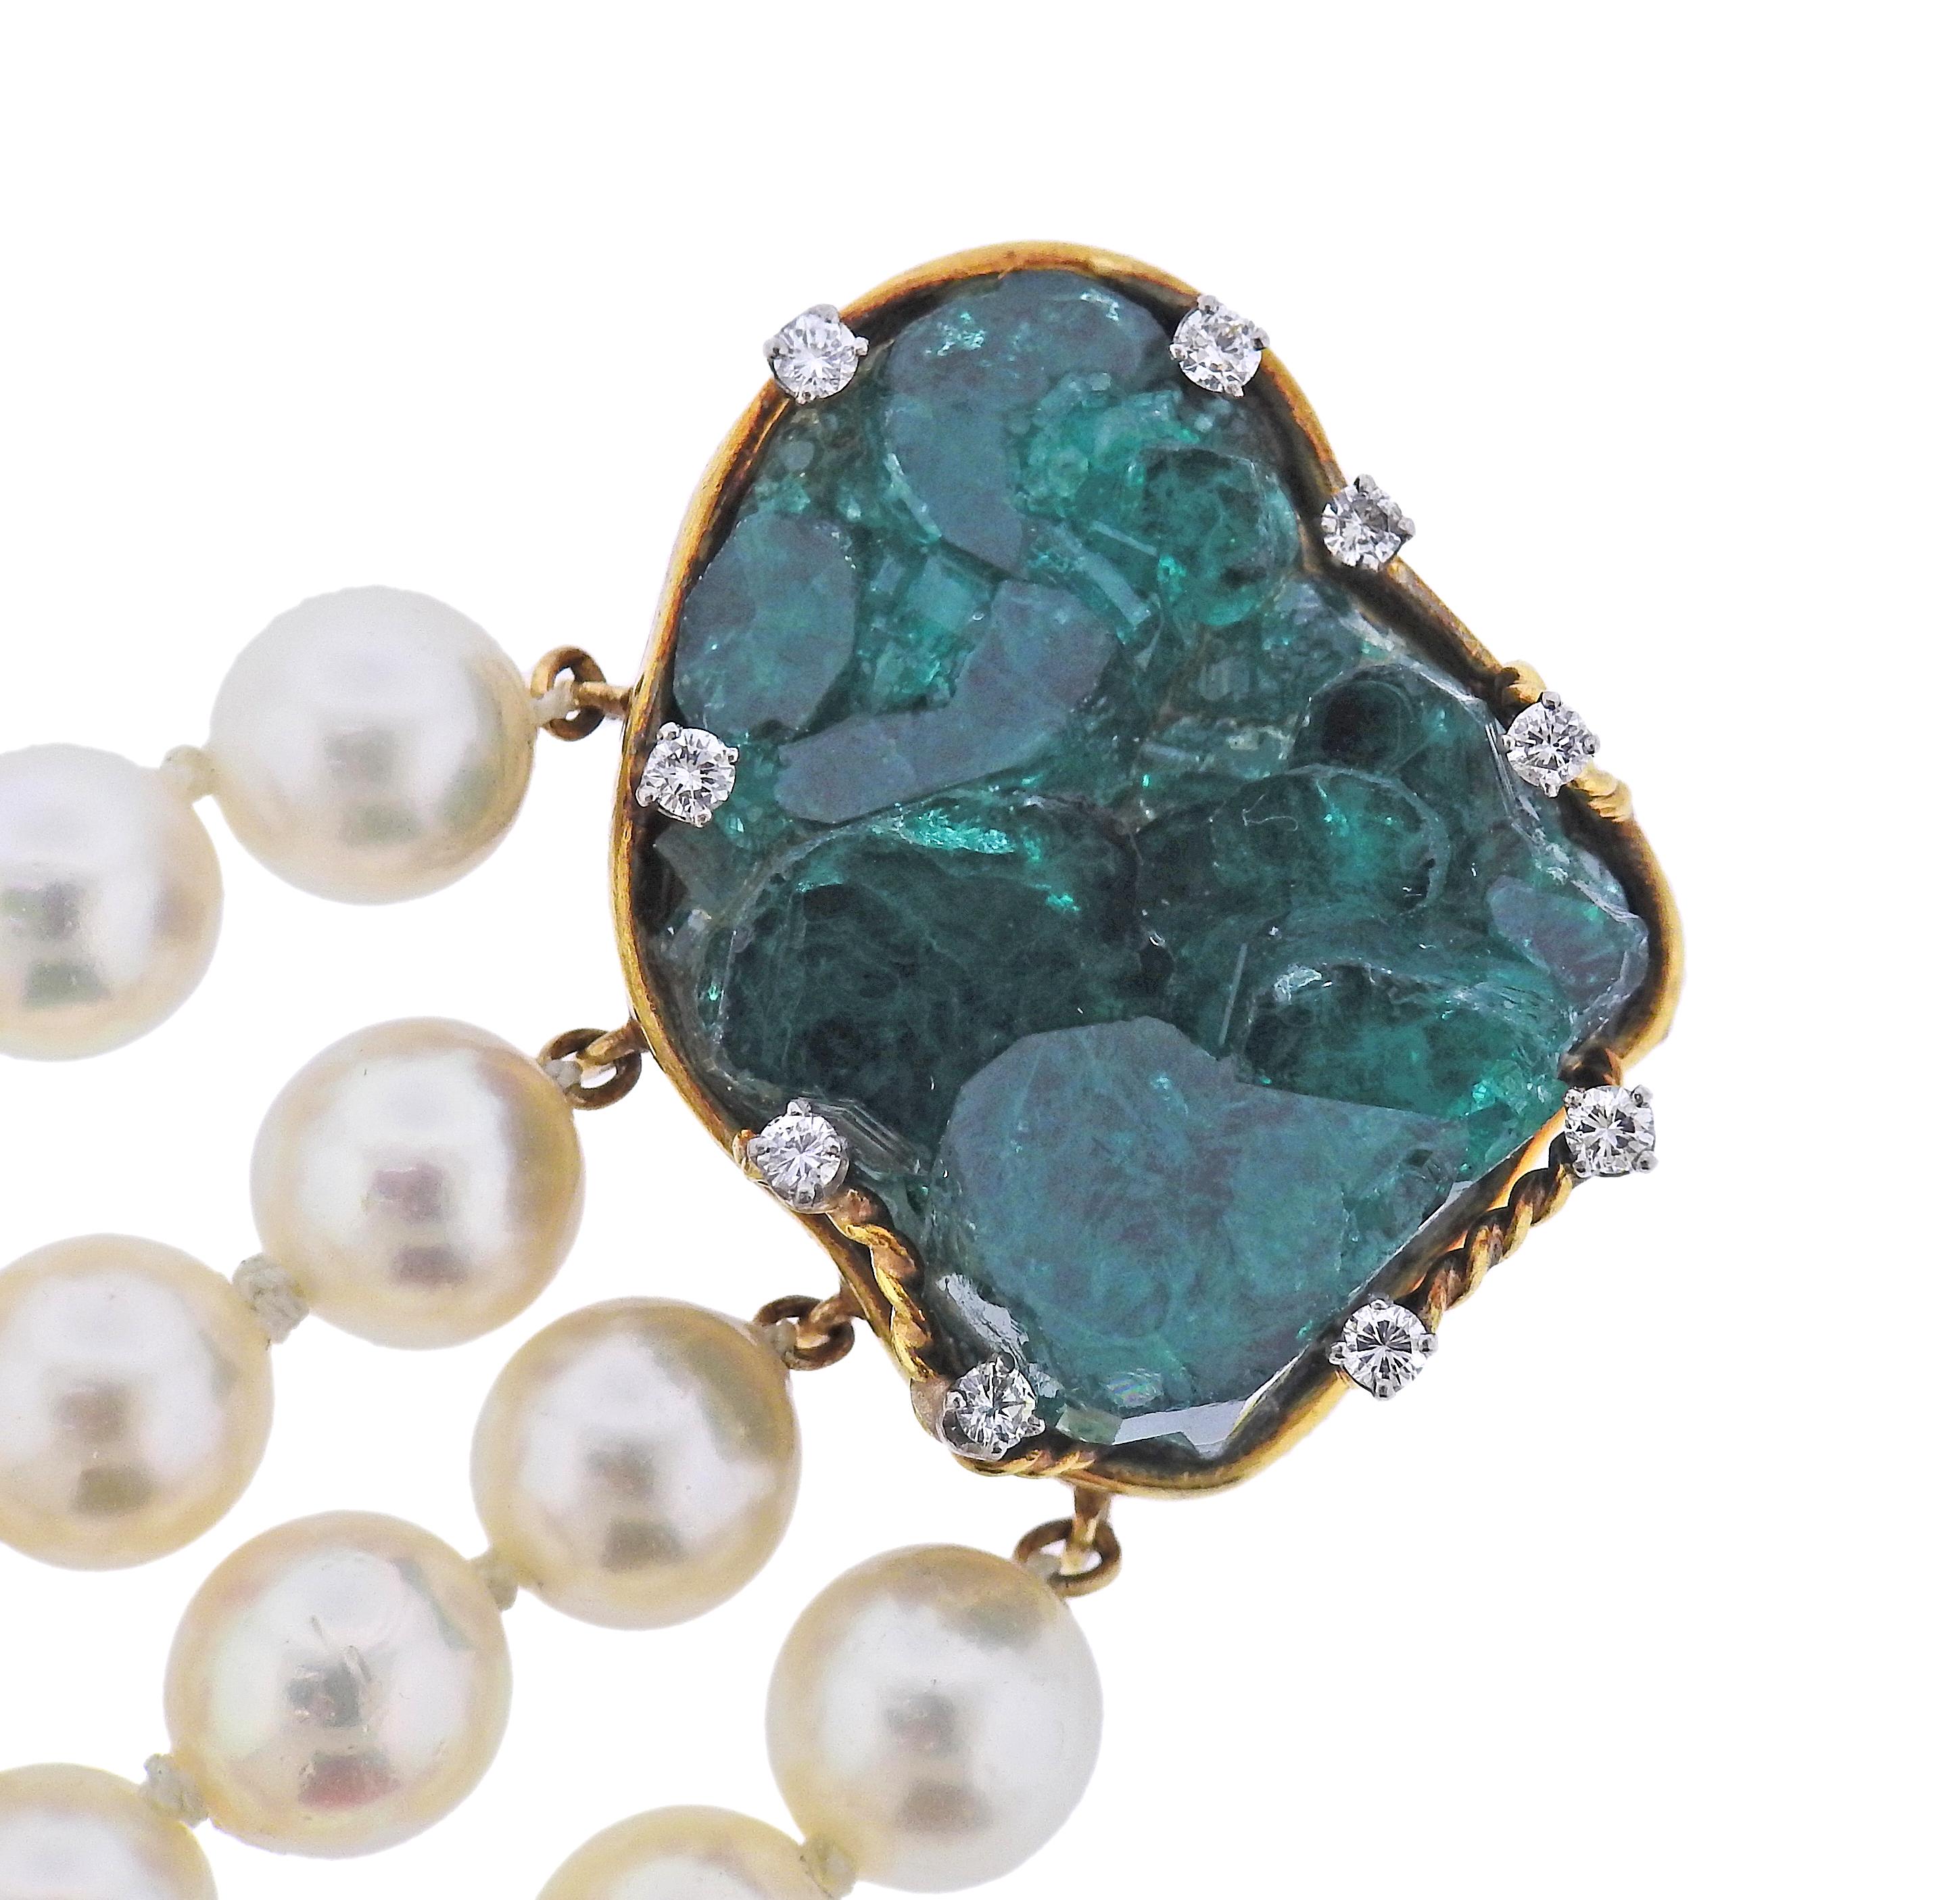 1970er Jahre 18k Gold 4 Strang Armband, mit Chatham Smaragde, ca. 0,60ctw in Diamanten und 8,5-9mm Perlen besetzt. Das Armband ist 6,5